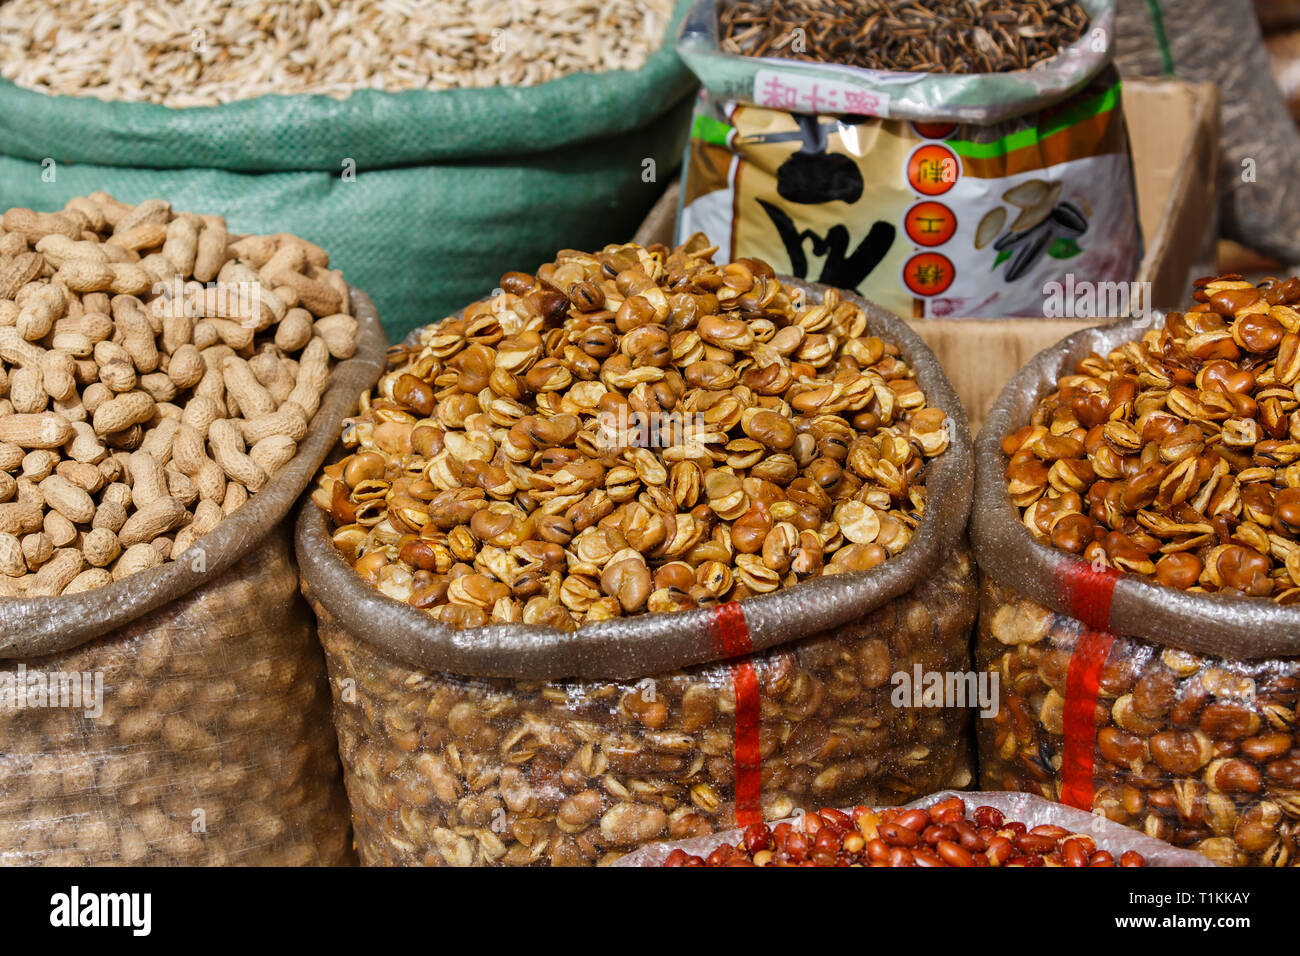 KASHGAR, Xinjiang / CHINE - 1 octobre 2017 : les noix dans un sac at a market stall, prêts pour la vente. Capturés à un bazar de Kashgar. Banque D'Images